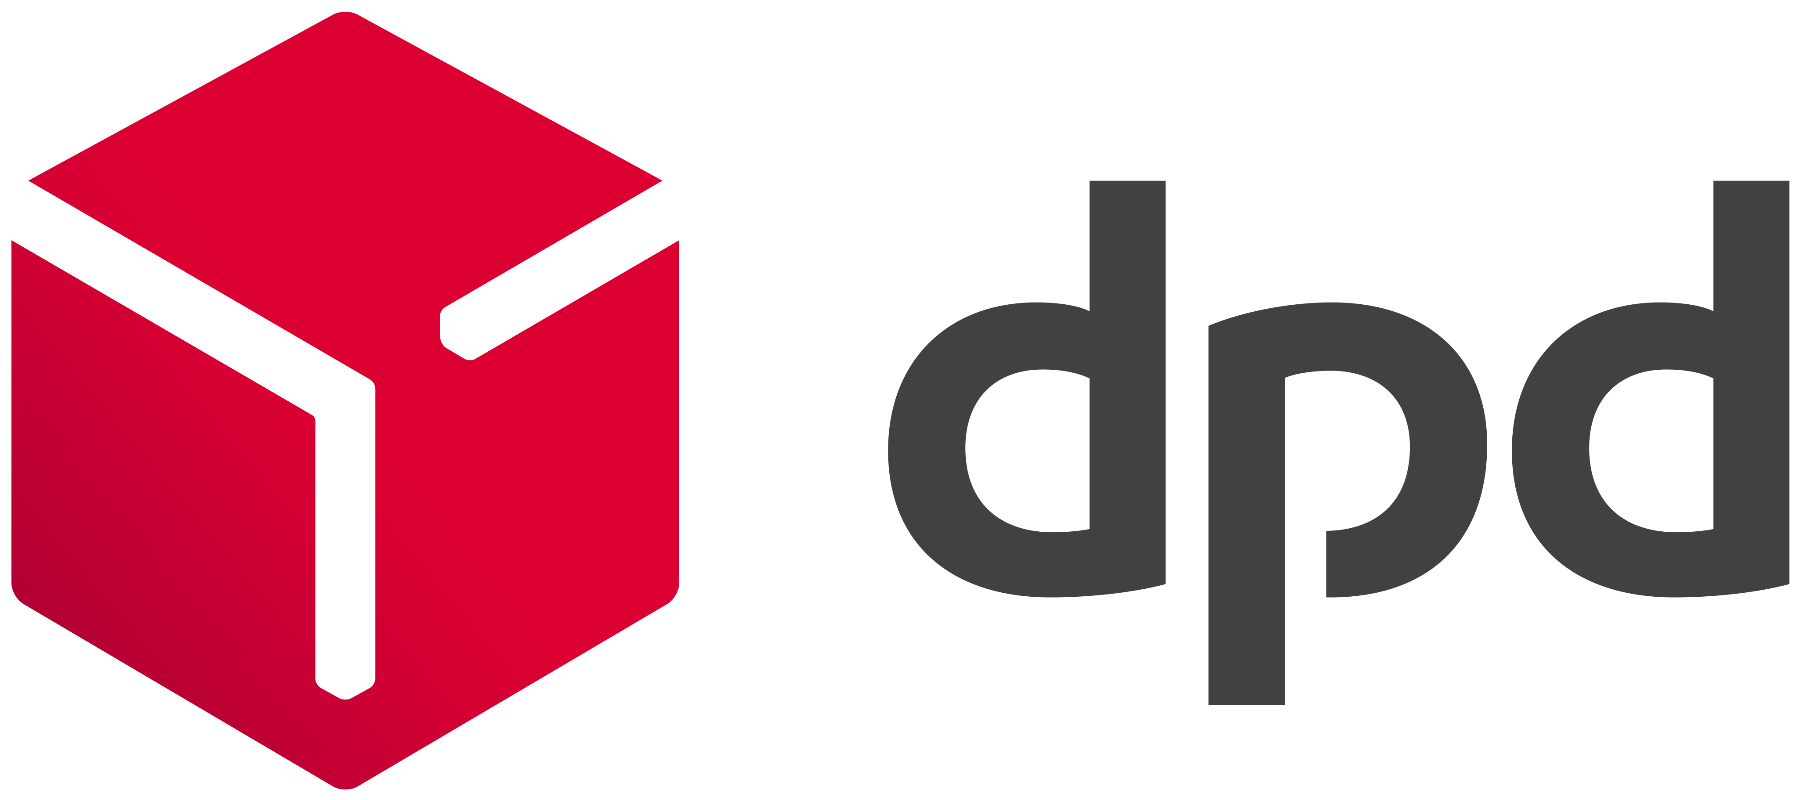 dpd-logo-redgrad-rgb